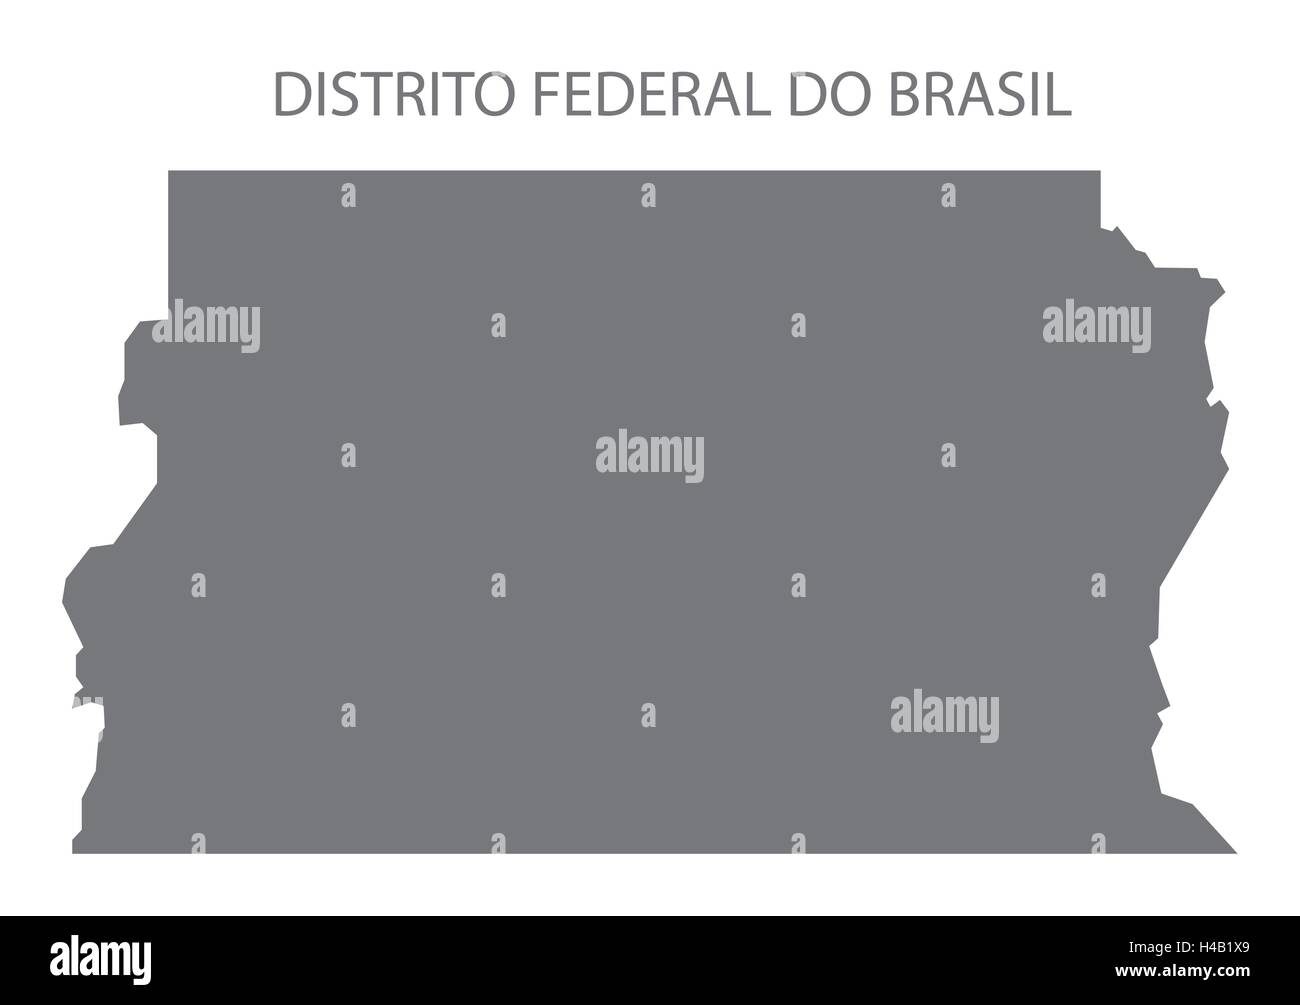 Distrito Federal do Brazil map in grey. Stock Vector